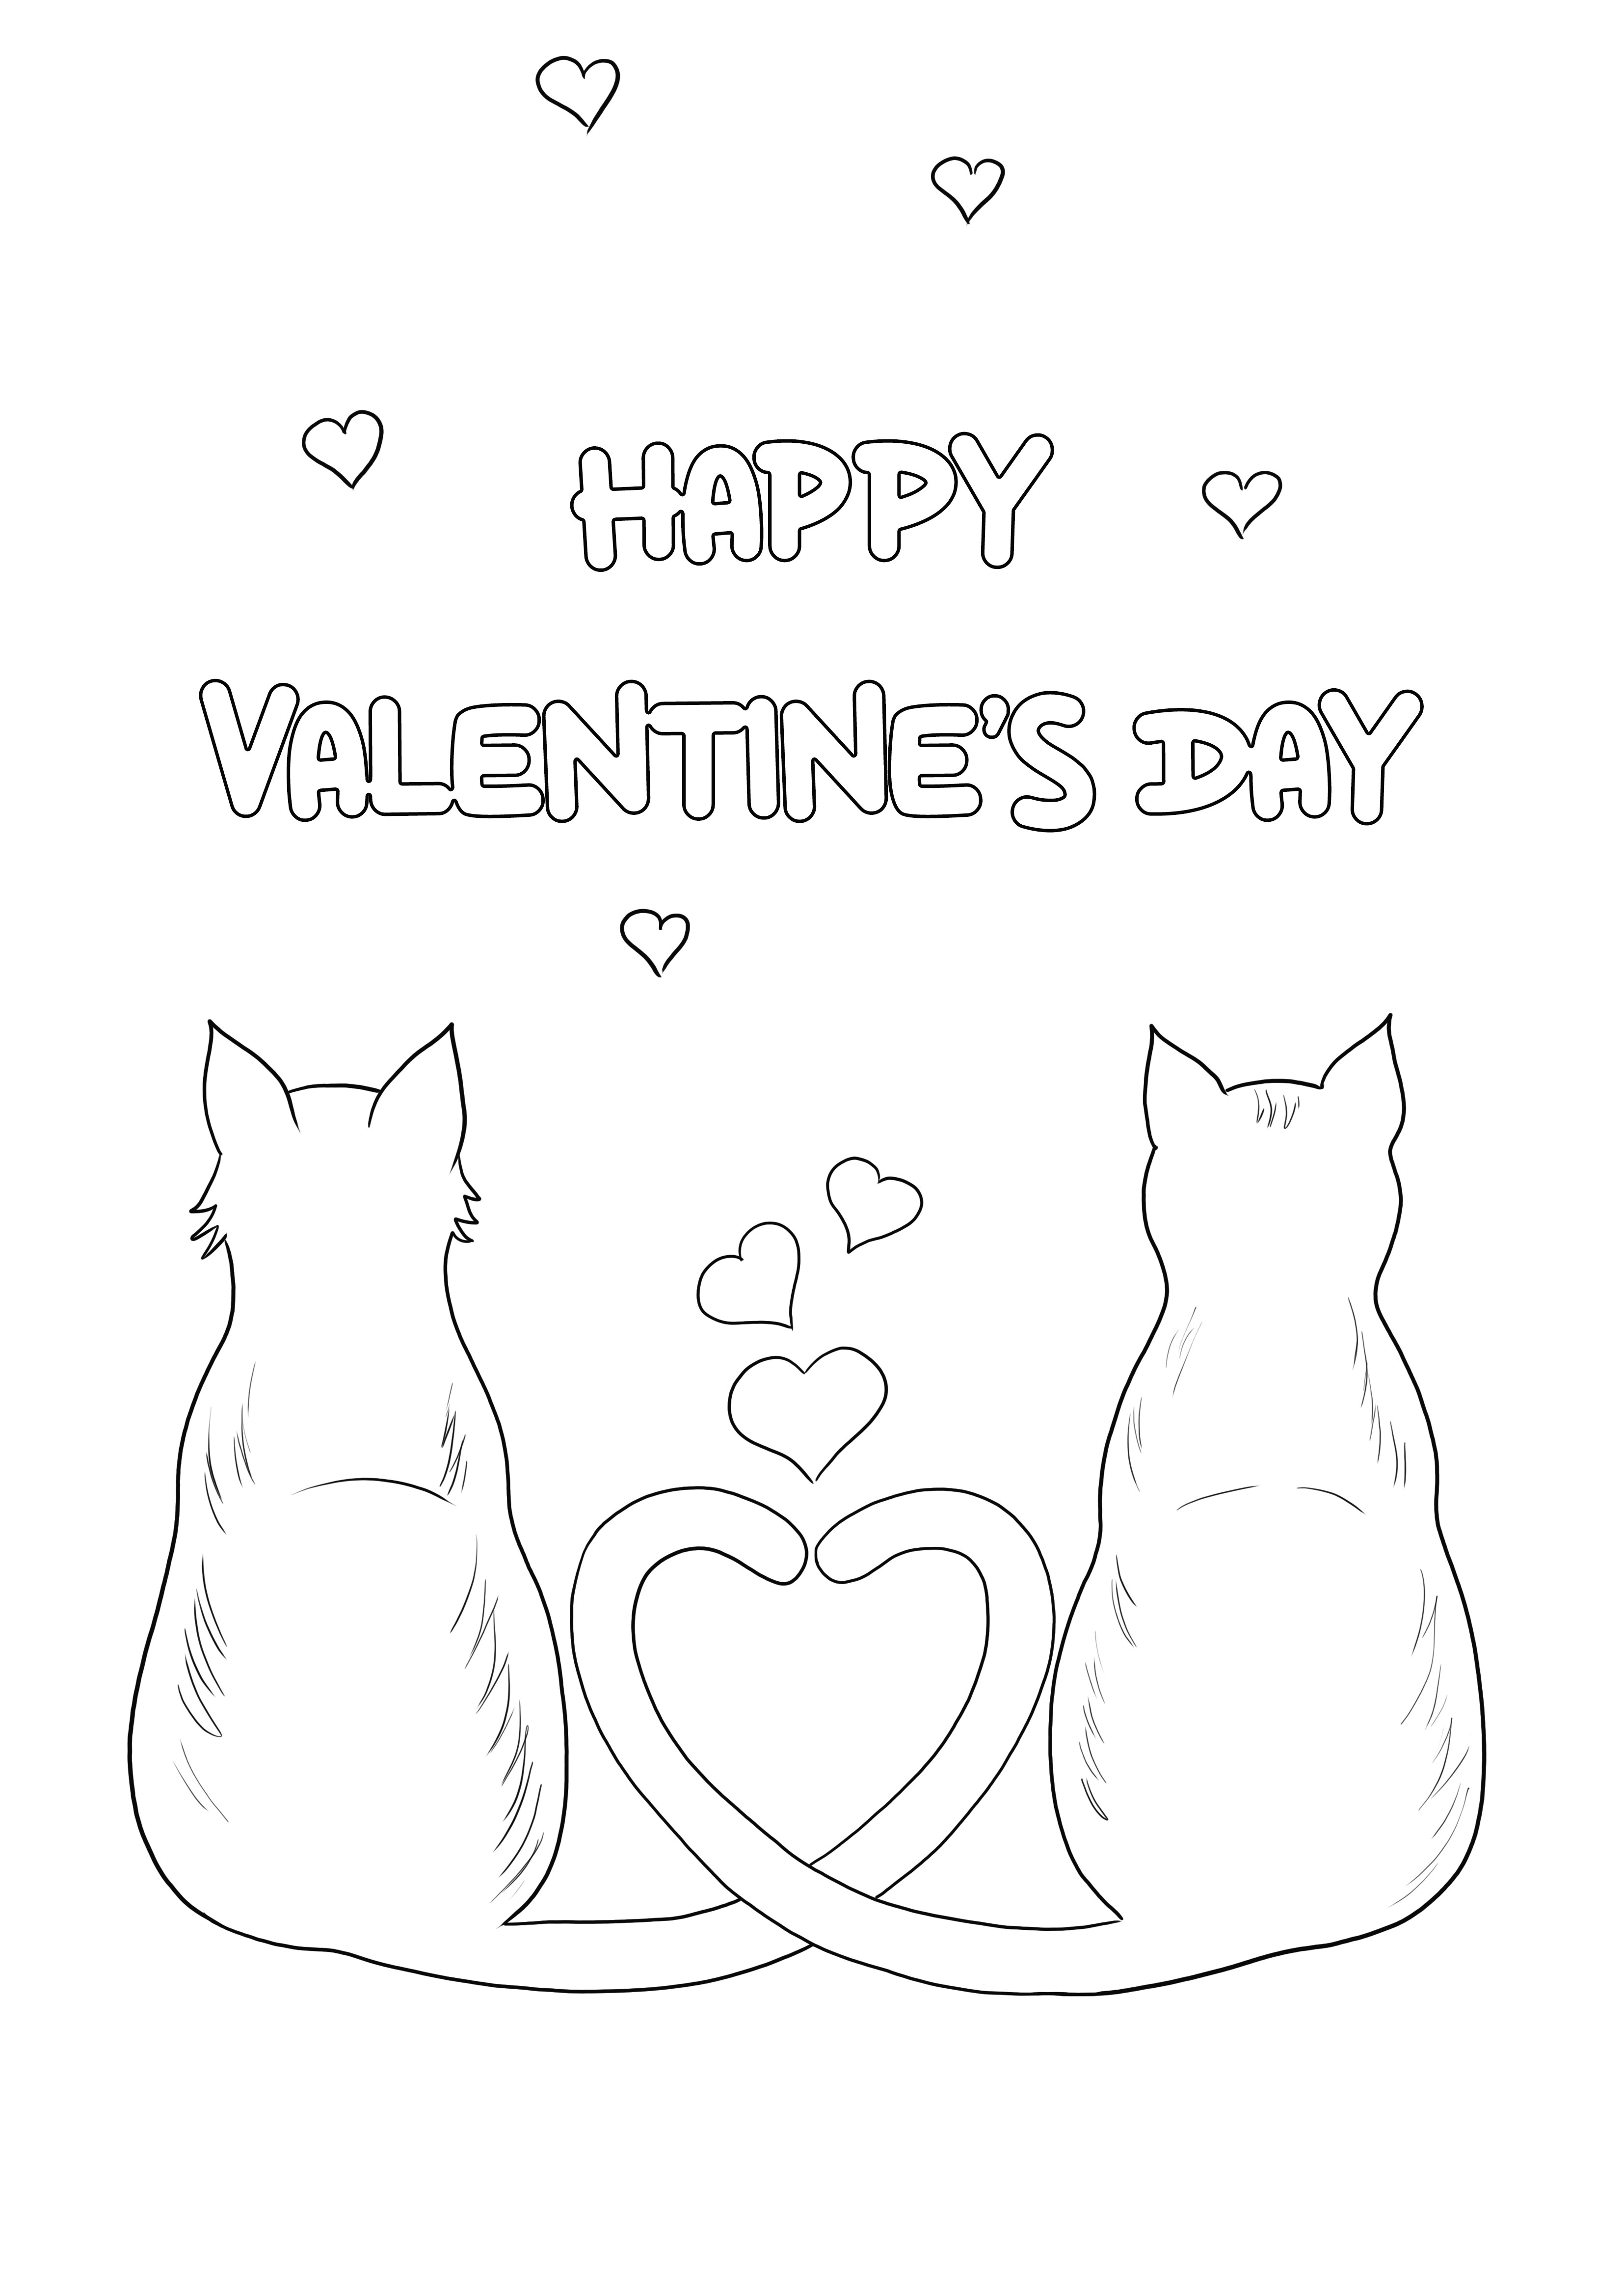 A macskák és szívek Valentin-napi szerelme, ingyenesen nyomtatható, a gyerekek színezhetik és élvezhetik